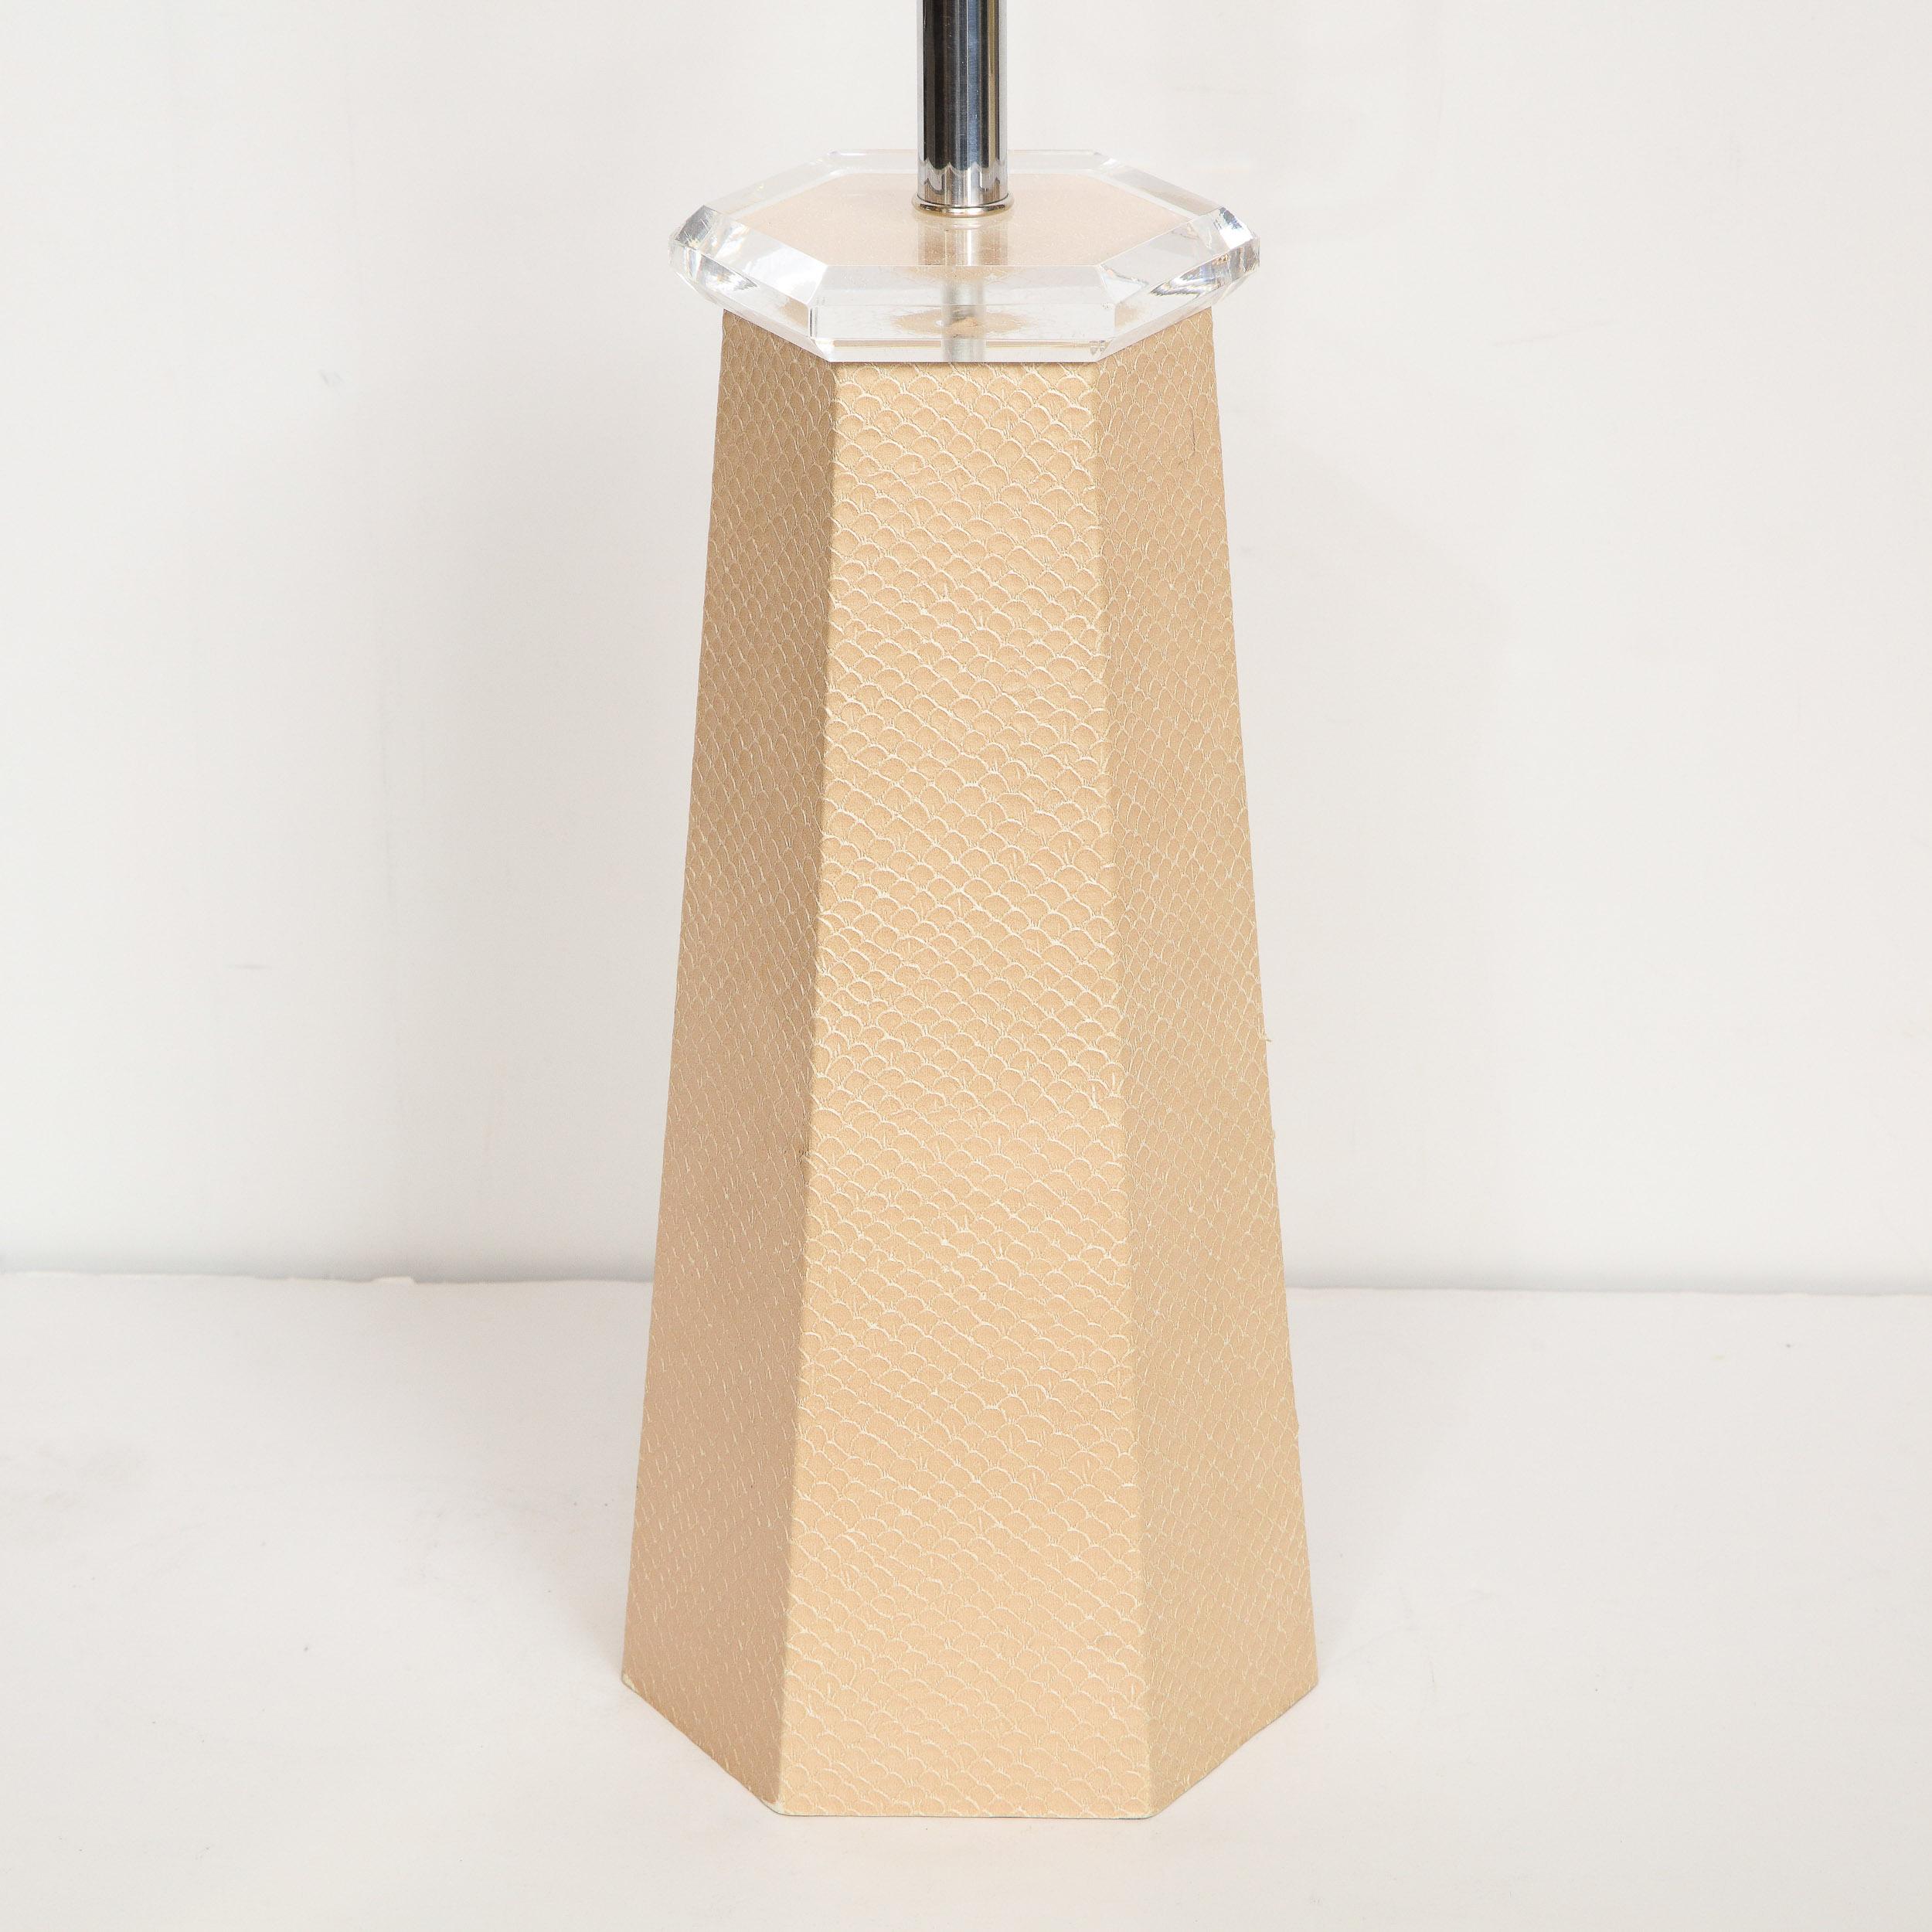 Signed Karl Springer Modernist Hexagonal Table Lamp in Beige Snakeskin 3